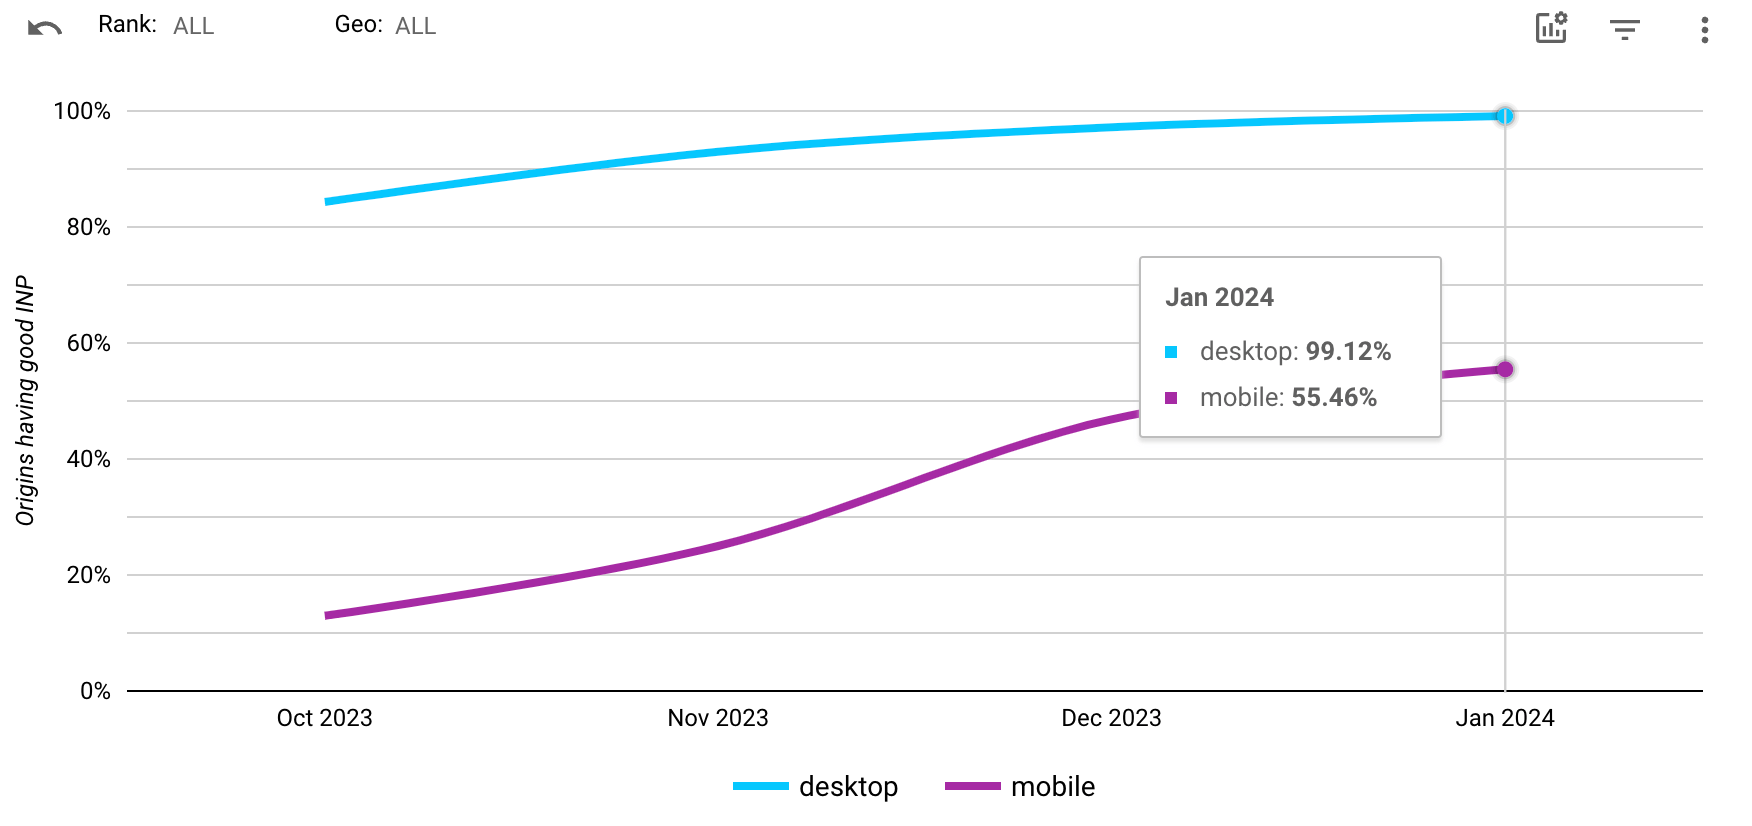 PubTech सीएमपी का इस्तेमाल करने वाली साइटों के लिए, ऑरिजिन आईएनपी पास रेट का स्क्रीनशॉट. डेस्कटॉप पर, पास की दर करीब 84% से बढ़कर 99.12% हो गई. मोबाइल पर, पास रेट करीब 22% से बढ़कर 55.46% हो गया है.